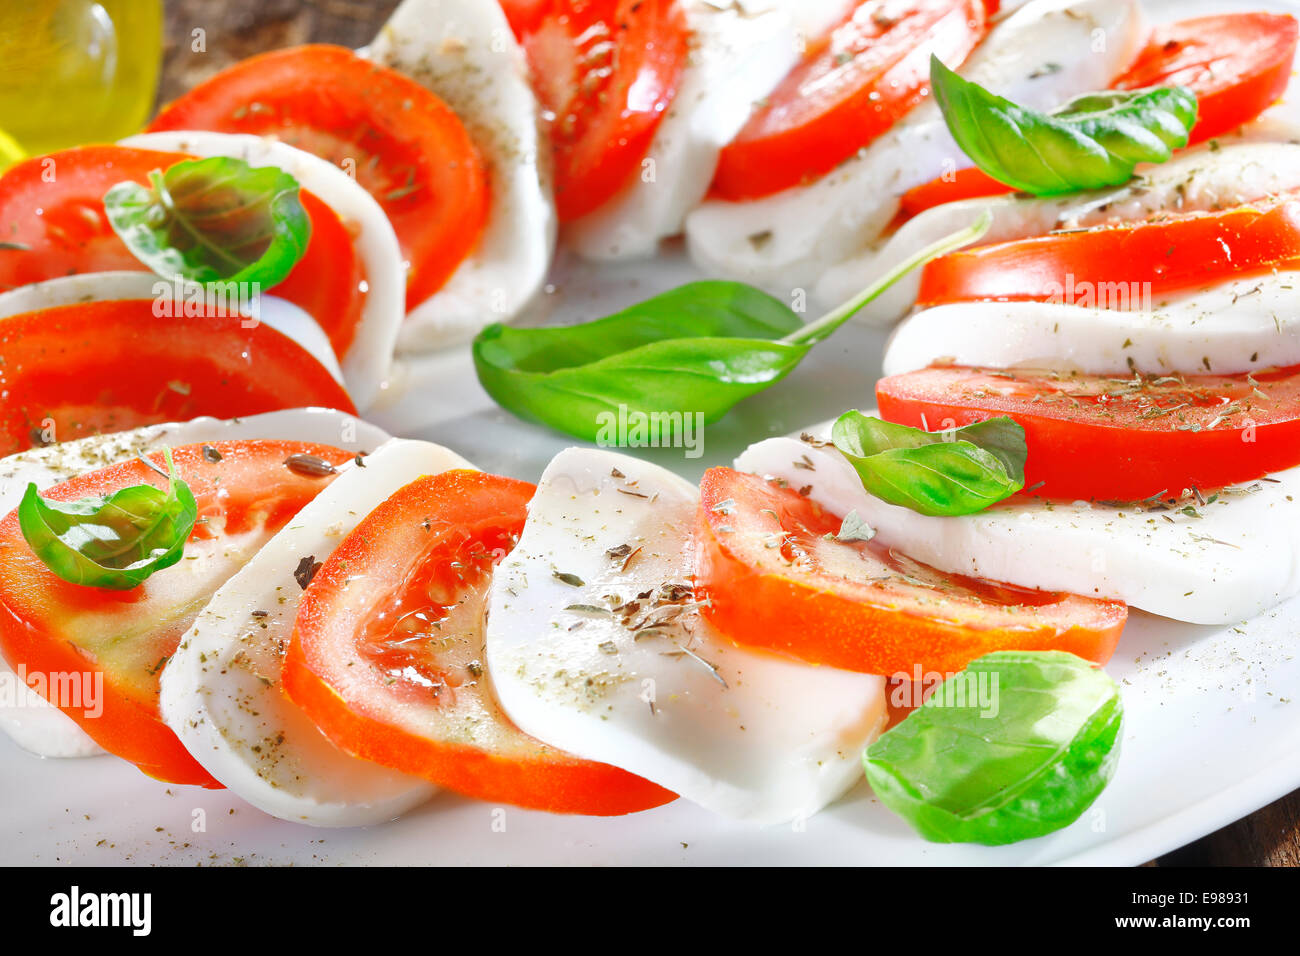 Kunstvoll arrangiert und Tomaten Salat in wechselnden Scheiben von roten und weißen garniert mit frischen Kräutern Stockfoto